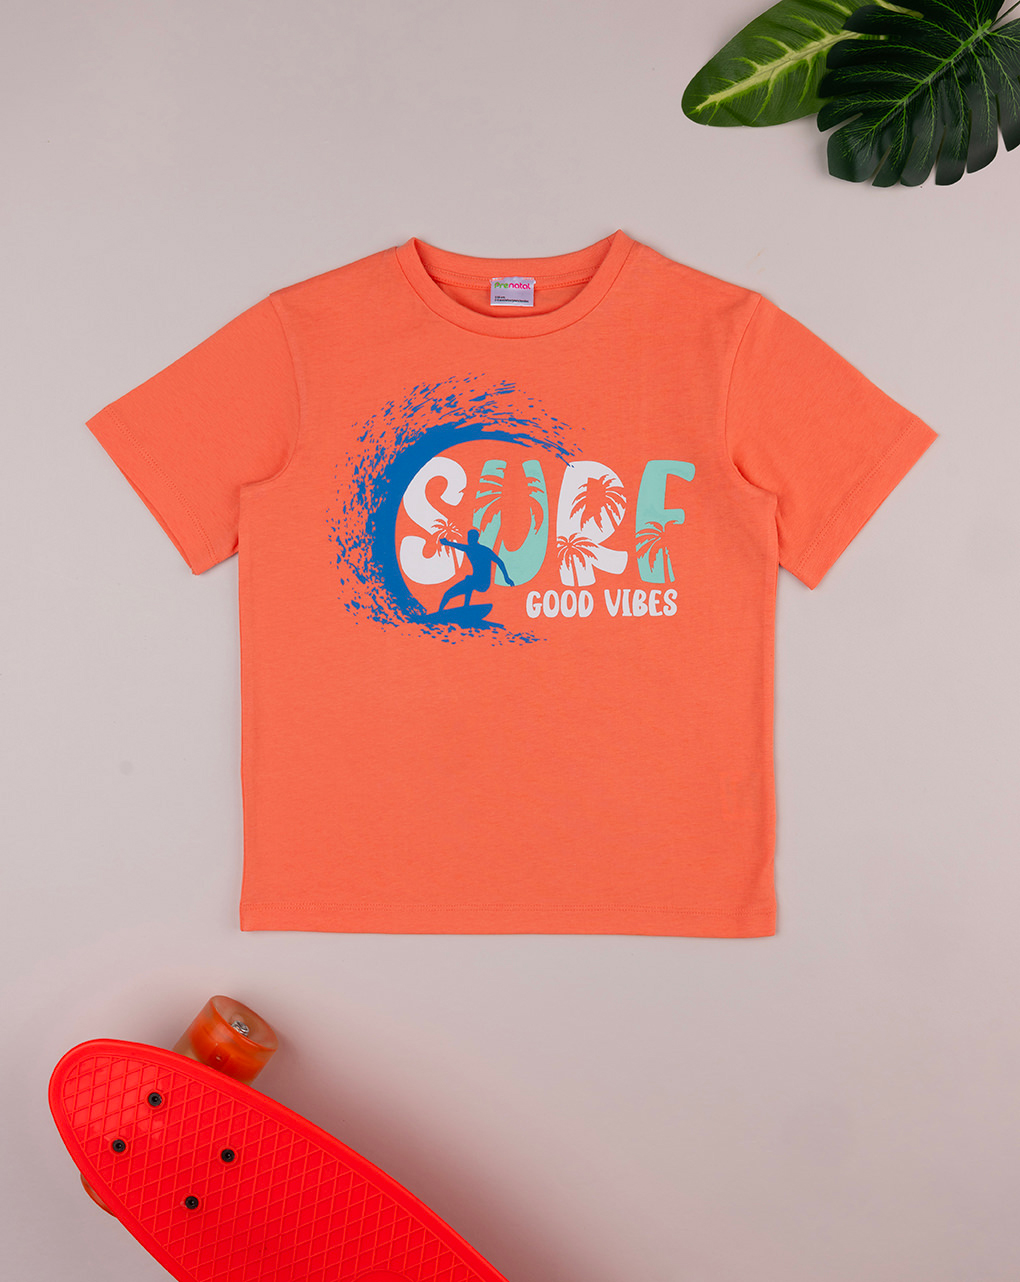 παιδικό t-shirt κοραλί surf good vibes για αγόρι